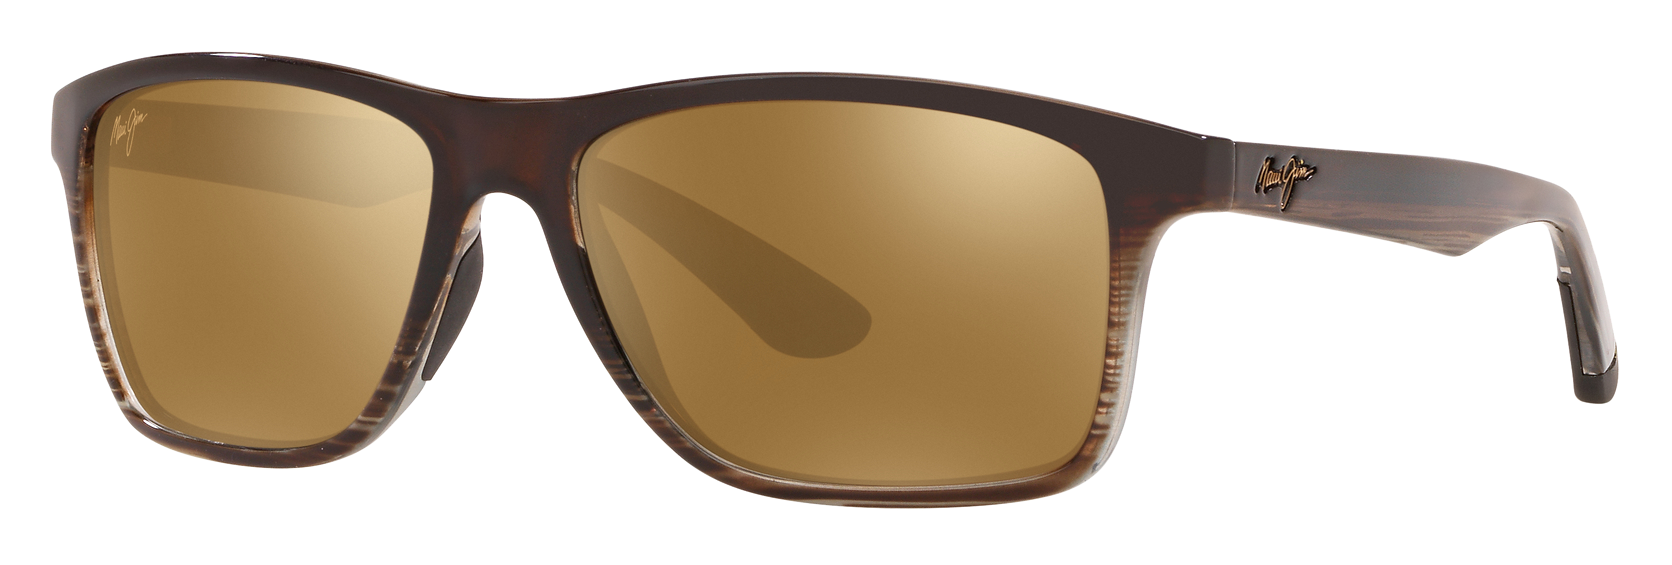 Maui Jim Onshore 798 Glass Polarized Sunglasses | Bass Pro Shops